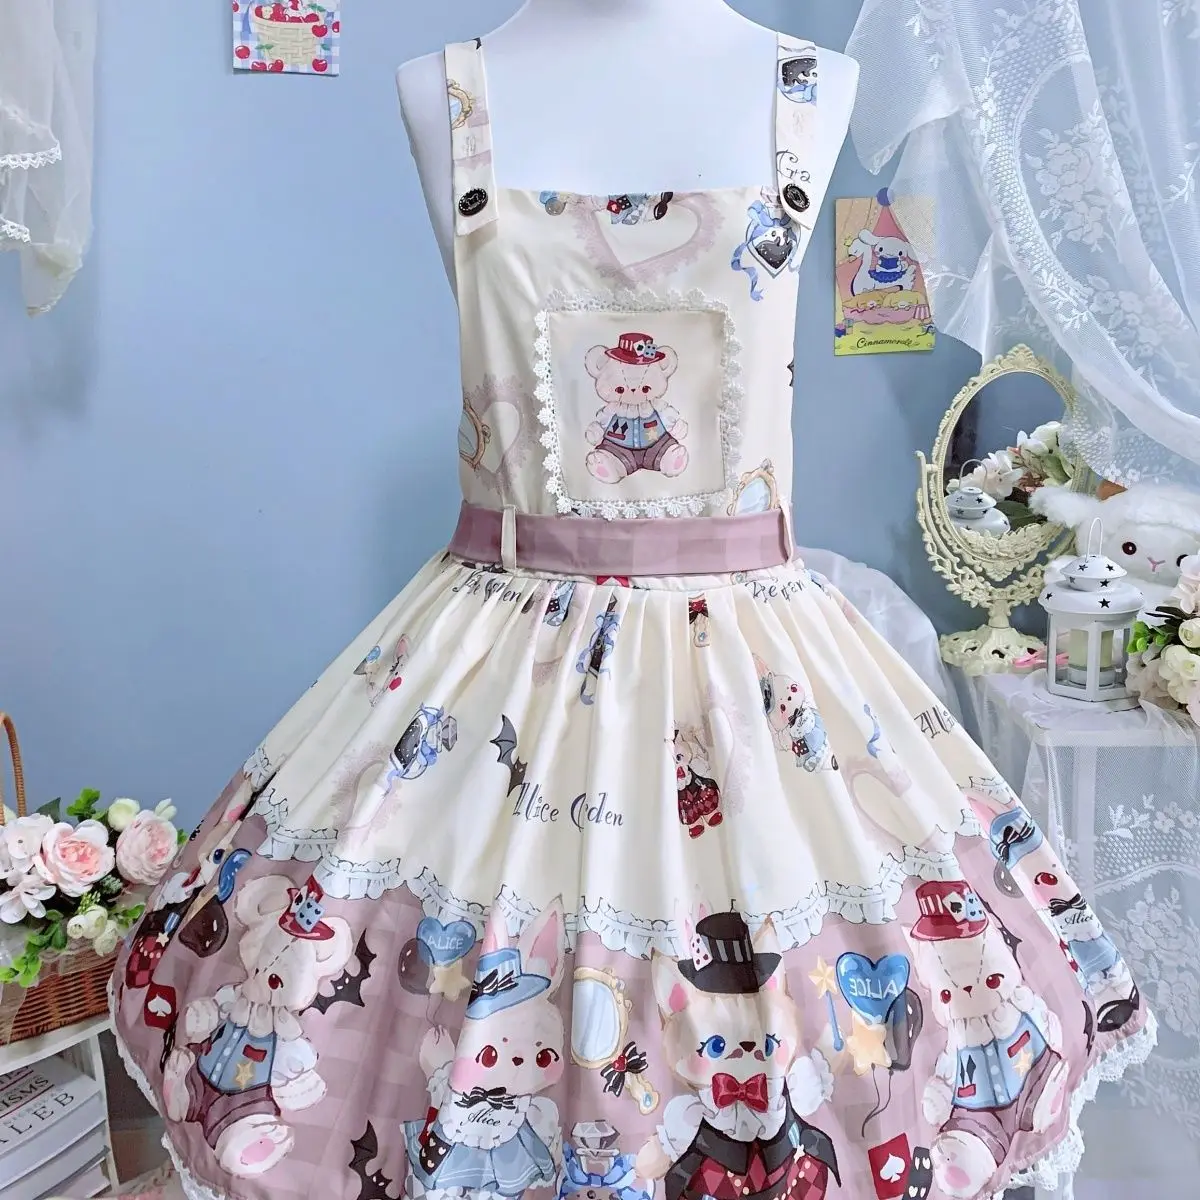 Japanische weiche Mädchen kawaii lolita jsk Kleid süße Hasen drucken süße Kleider Frauen Party Sommer Prinzessin Hosenträger Kleid